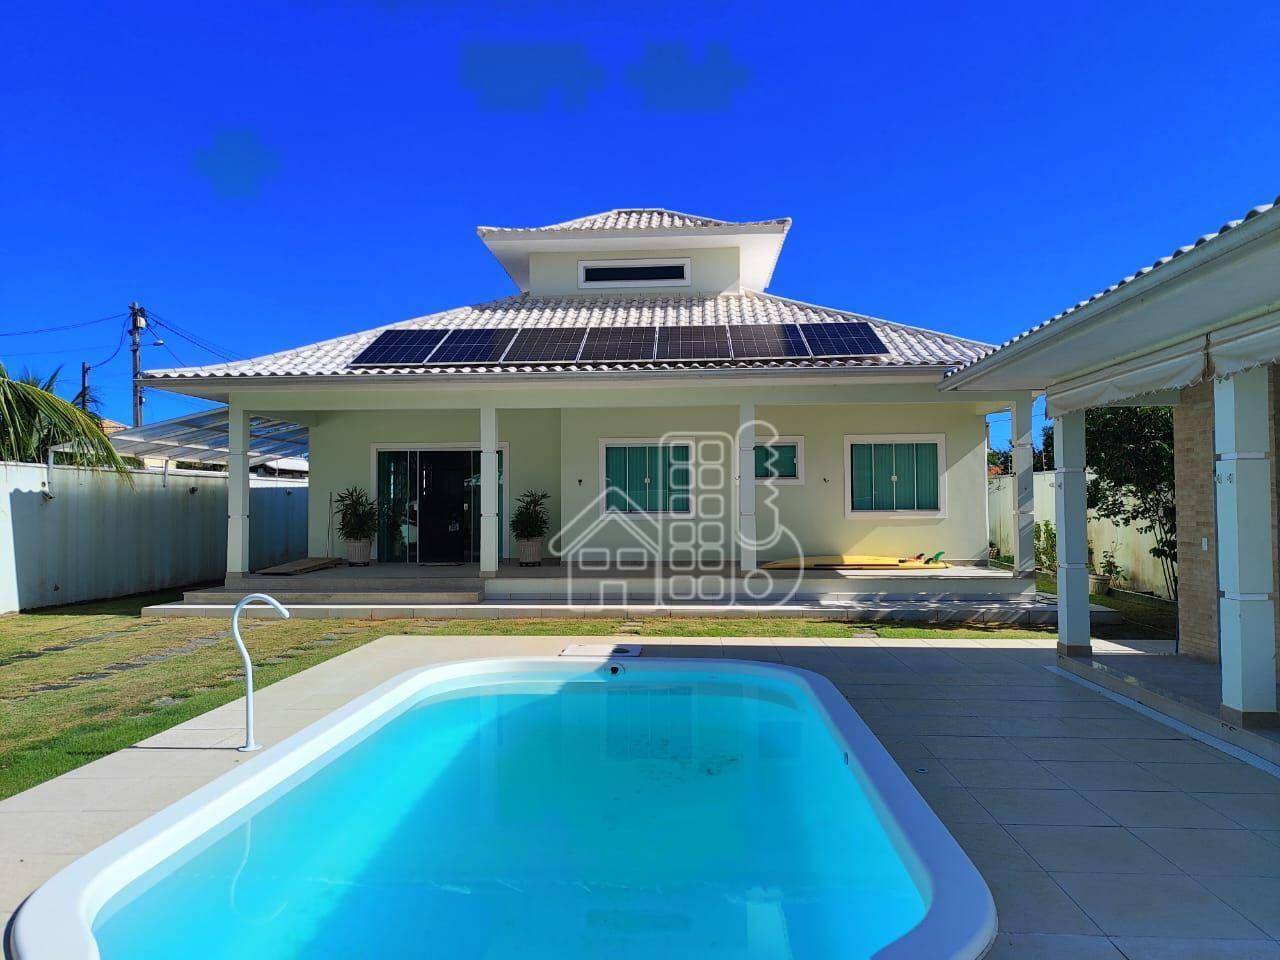 Casa com 3 dormitórios à venda, 300 m² por R$ 880.000,00 - Jaconé (Ponta Negra) - Maricá/RJ